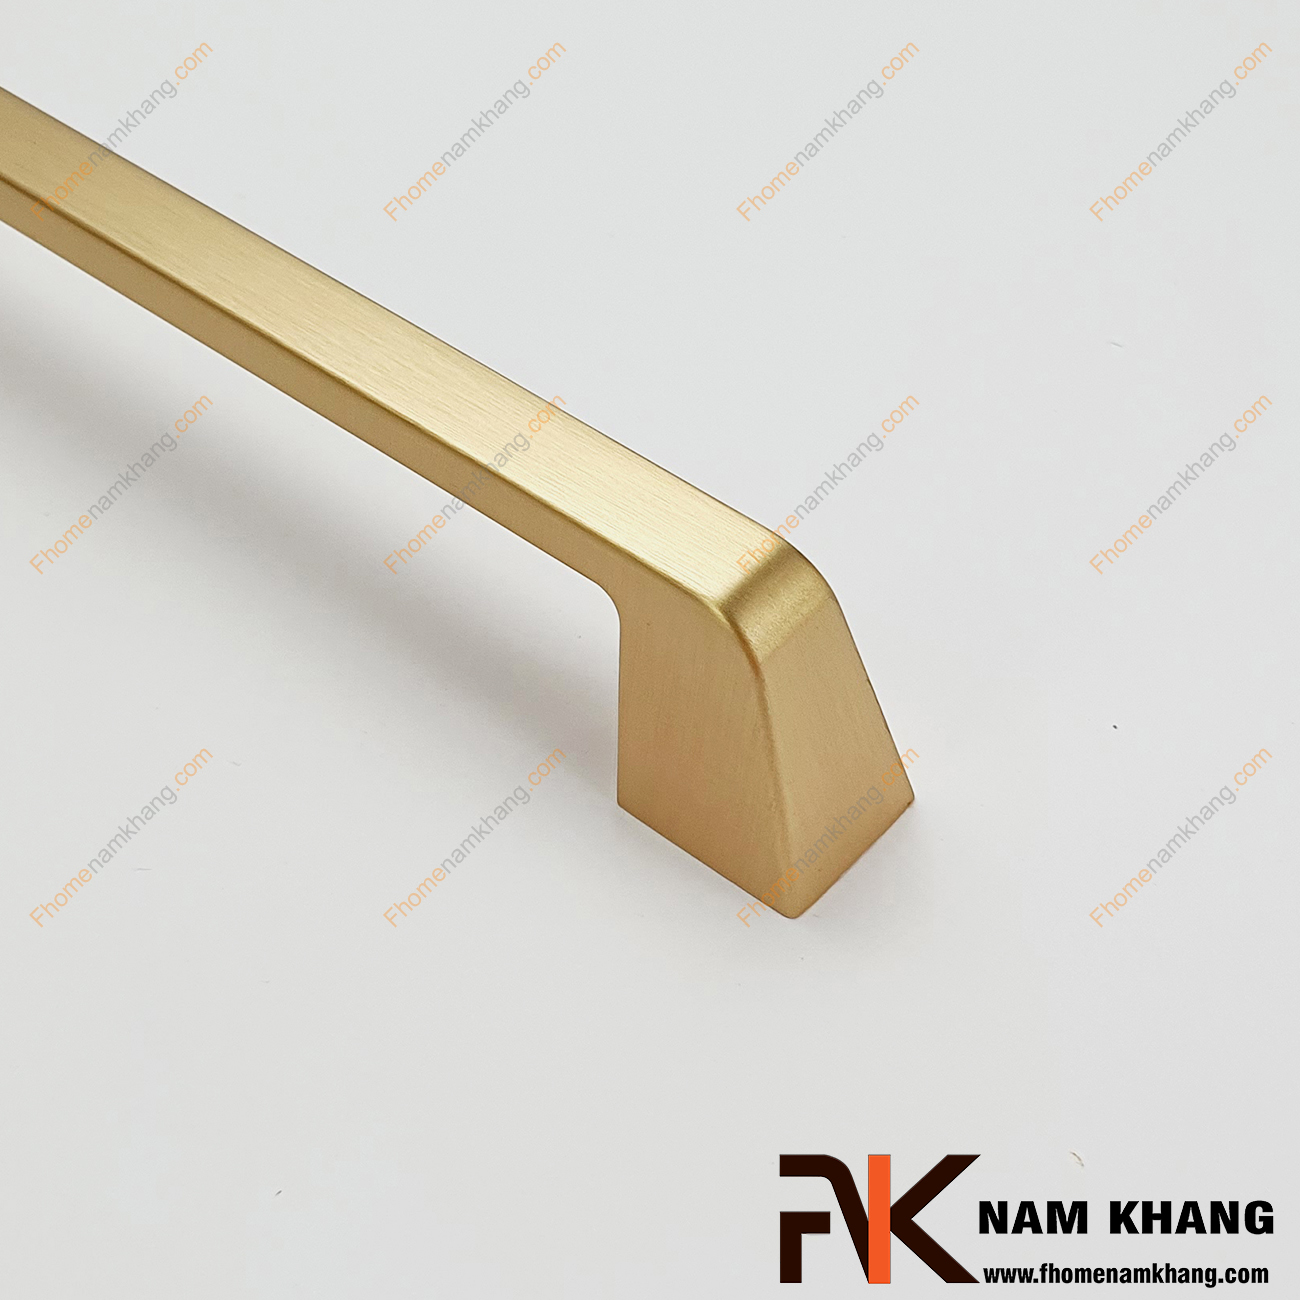 Tay nắm tủ mạ vàng mờ NK206-V được thiết kế dựa trên hợp kim chất lượng khuôn dạng vuông tạo cảm giác cầm nắm vô cùng chắc chắn và thao tác thực hiện cũng vô cùng dễ dàng.